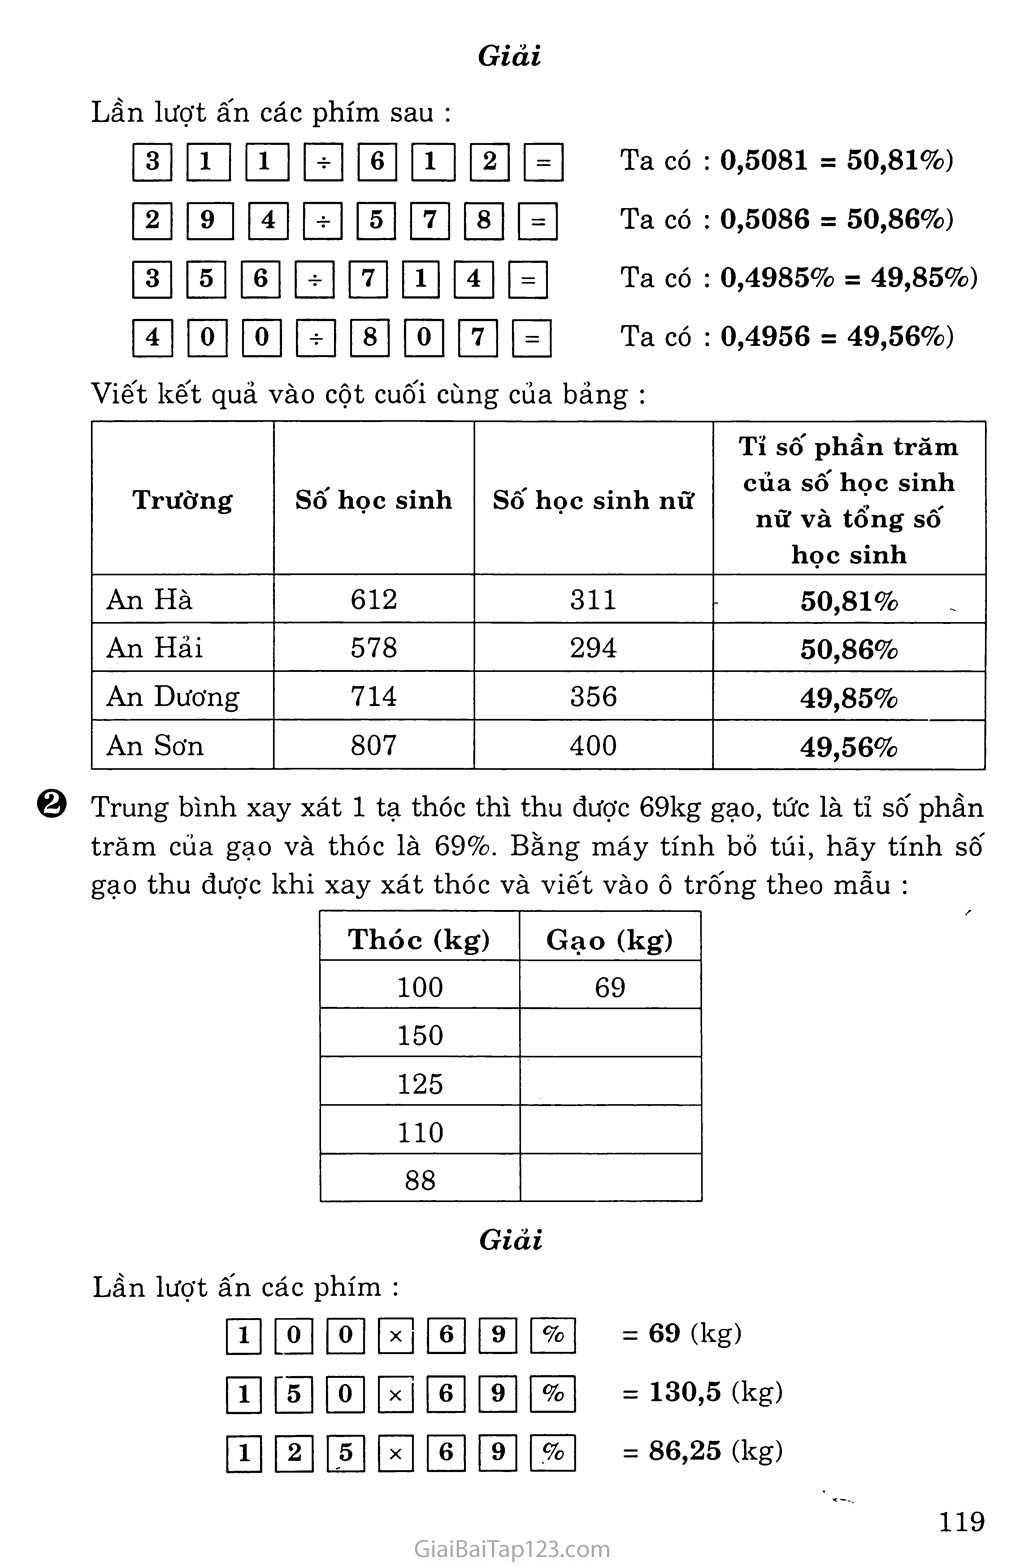 Sử dụng máy tính bỏ túi để giải toán về tỉ số phần trăm trang 2